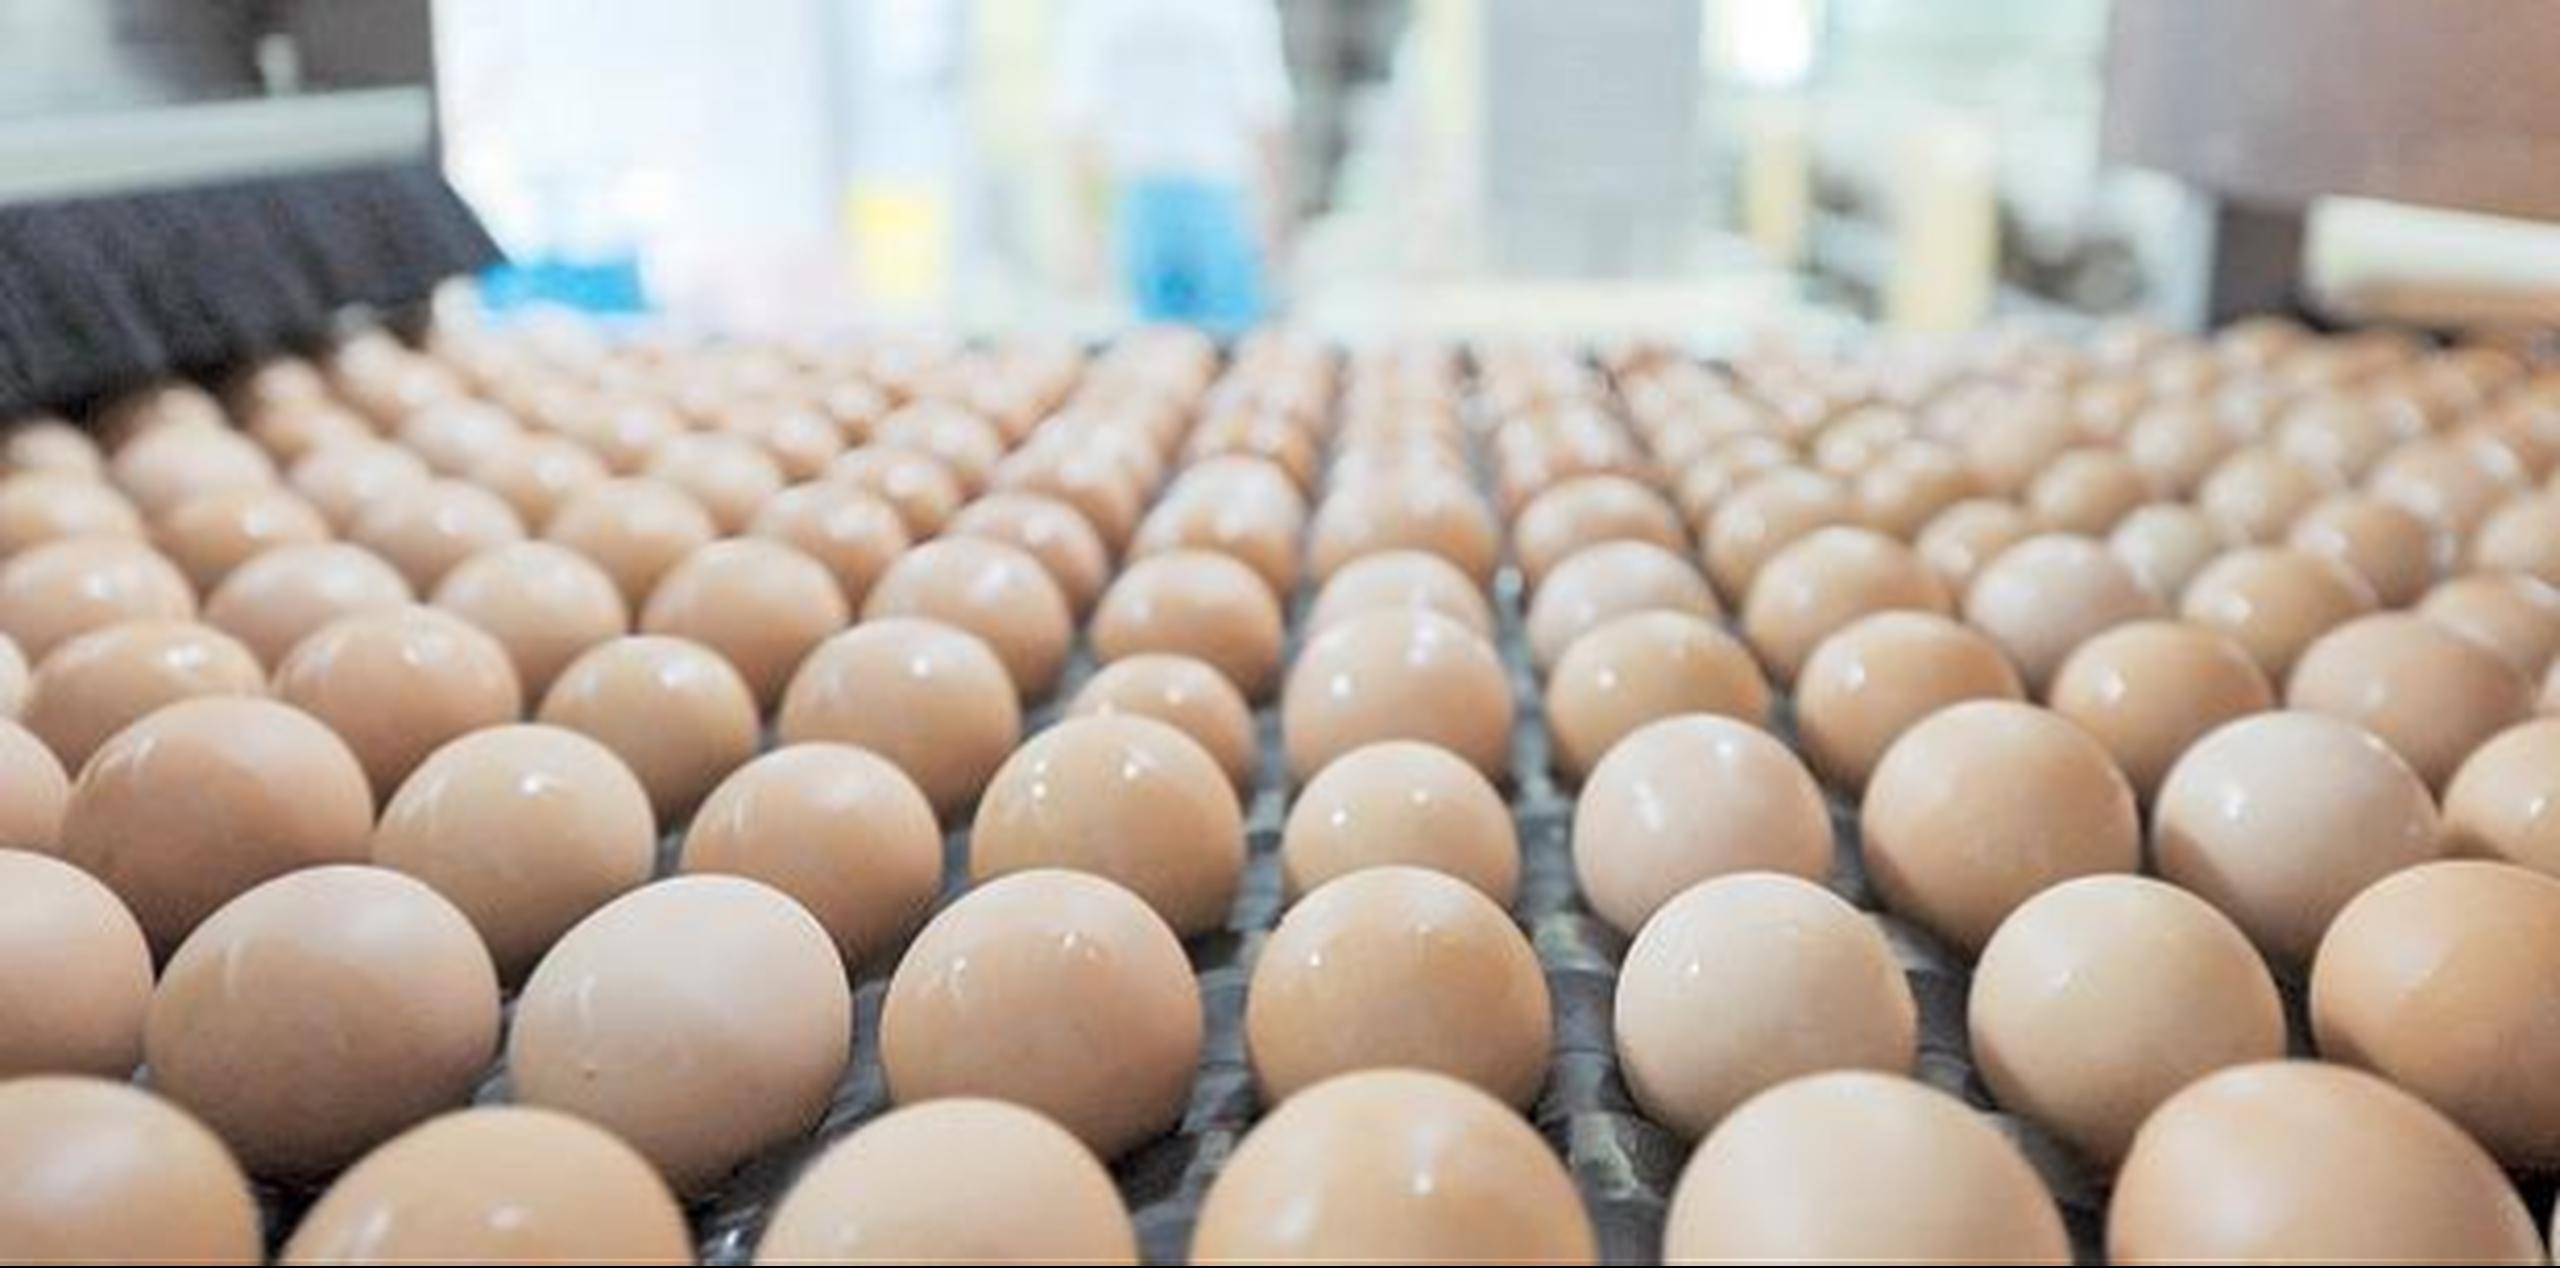 La producción local de huevos se afecta por la venta de huevos importados es por debajo de costos de producción. (Archivo)